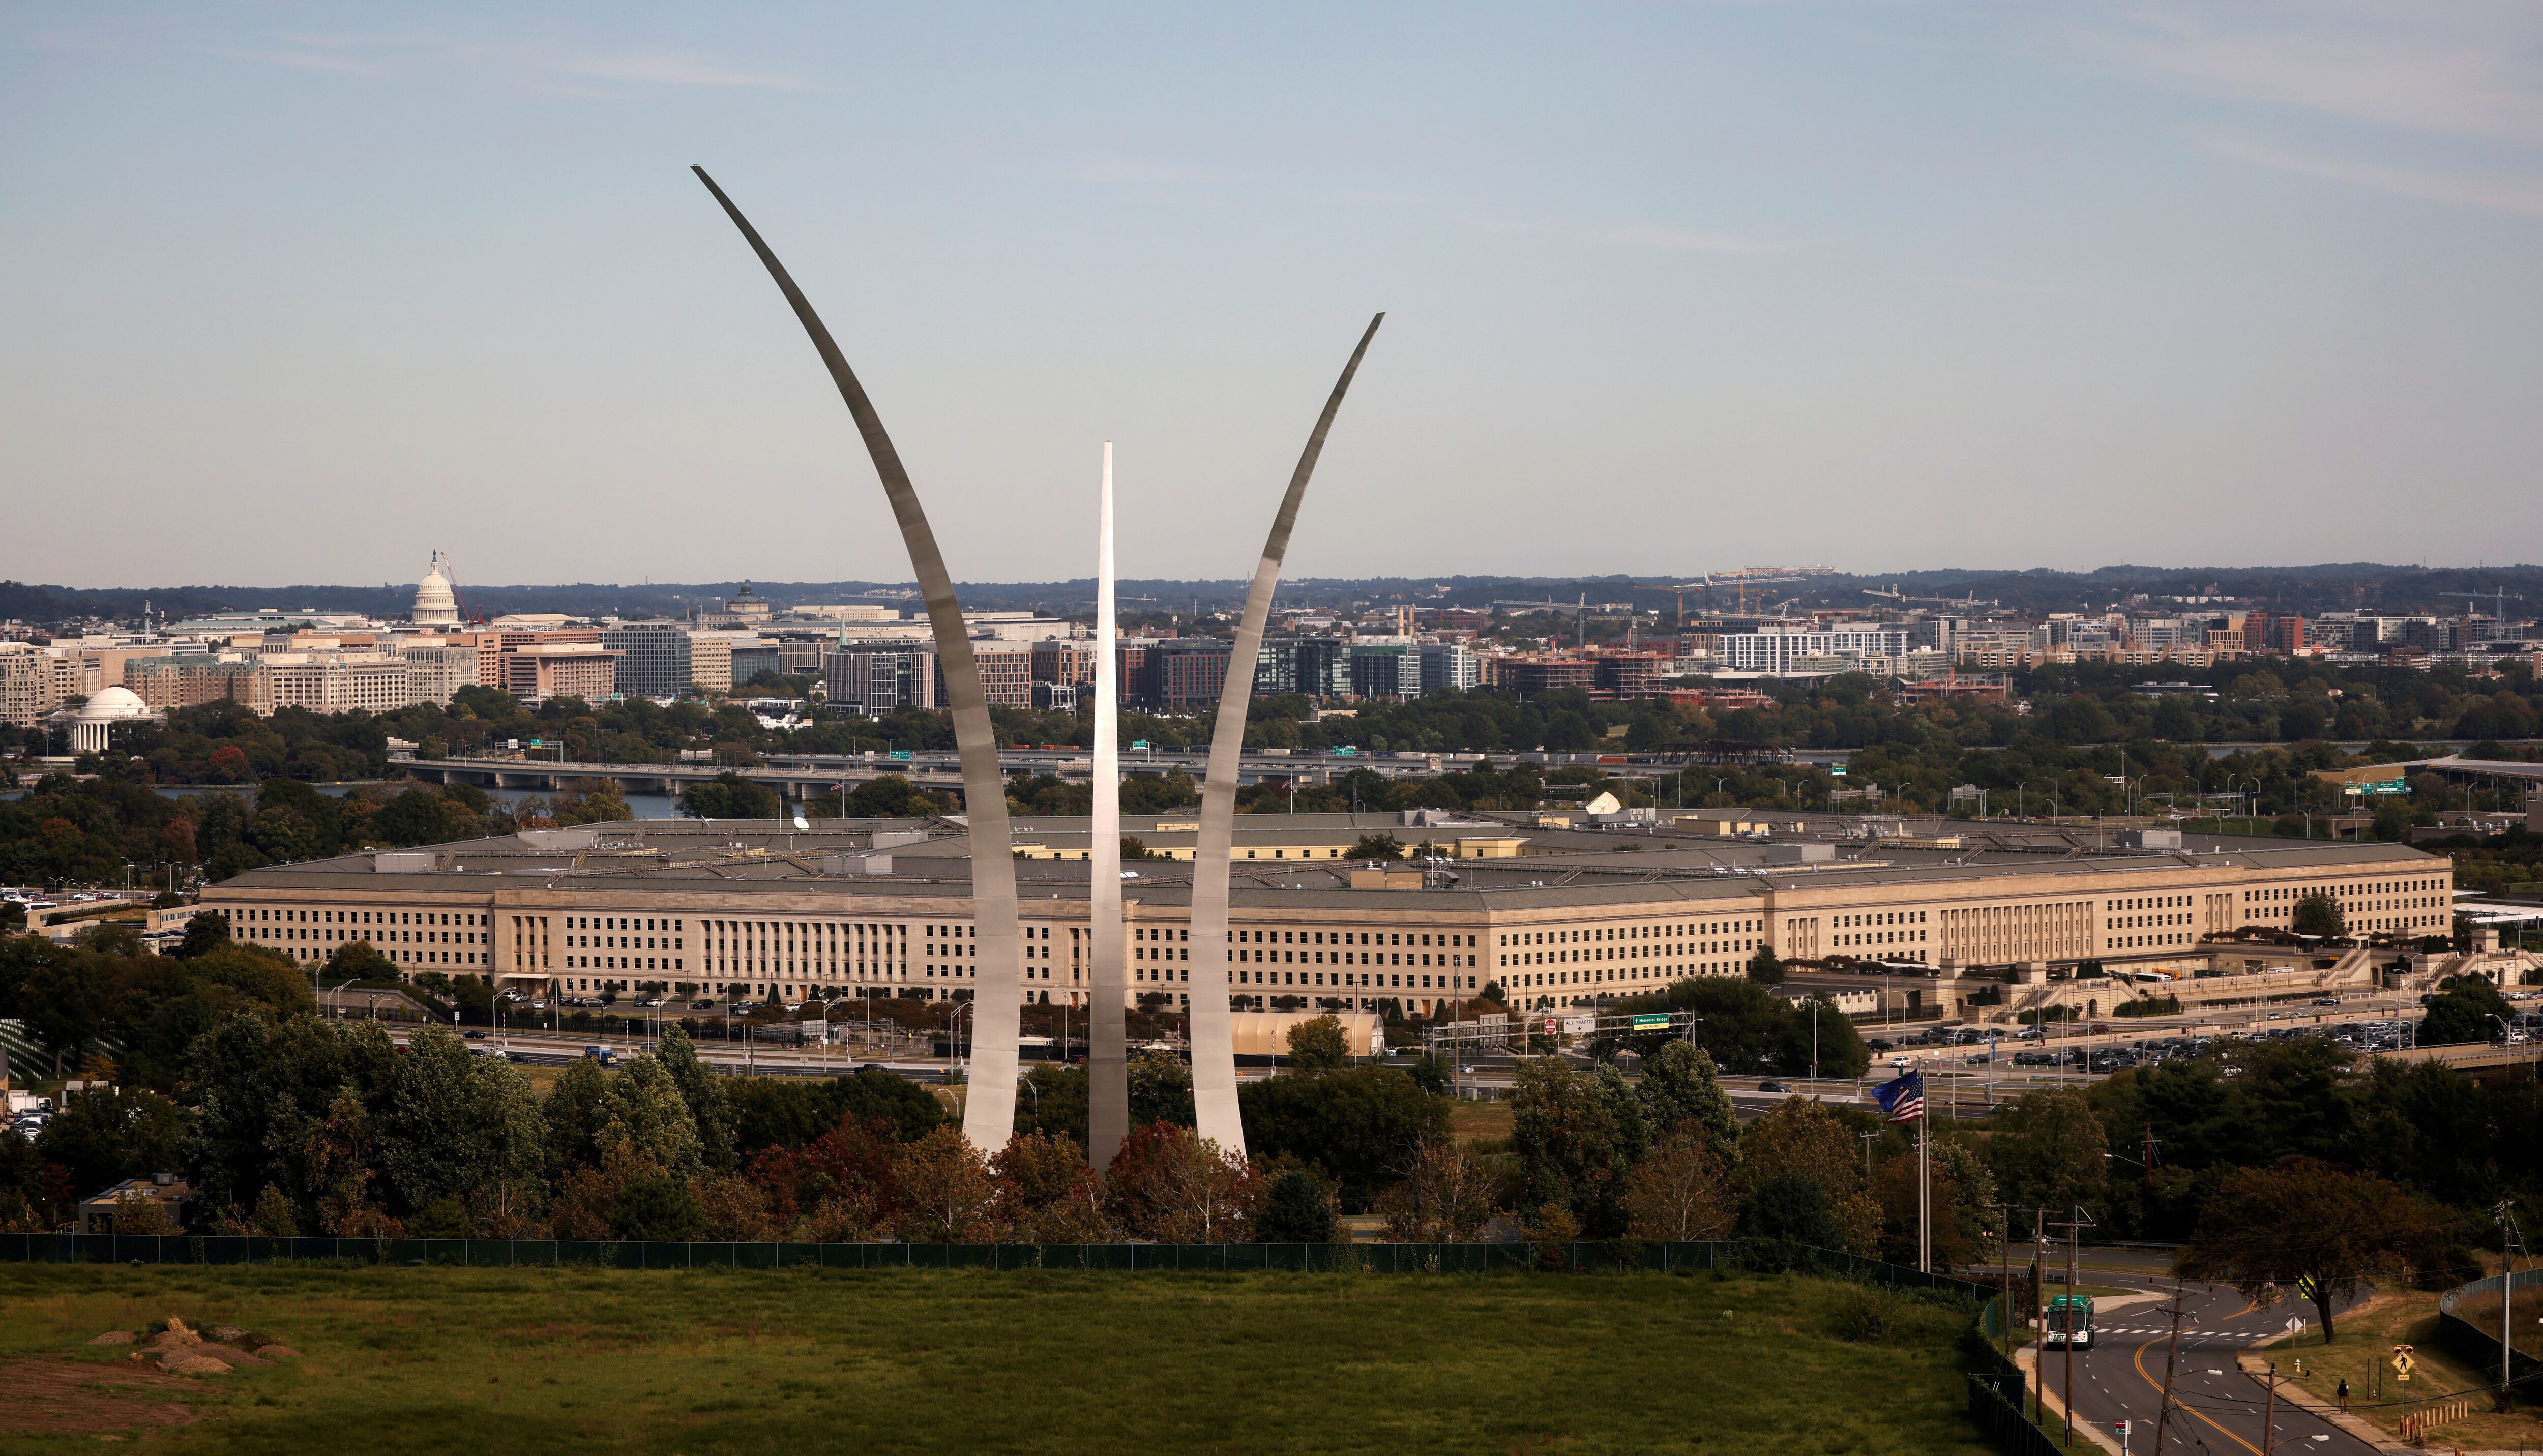 Foto de archivo ilustrativa del edificio del Pentagono en Arlington, Virginia
Oct 9, 2020. REUTERS/Carlos Barria